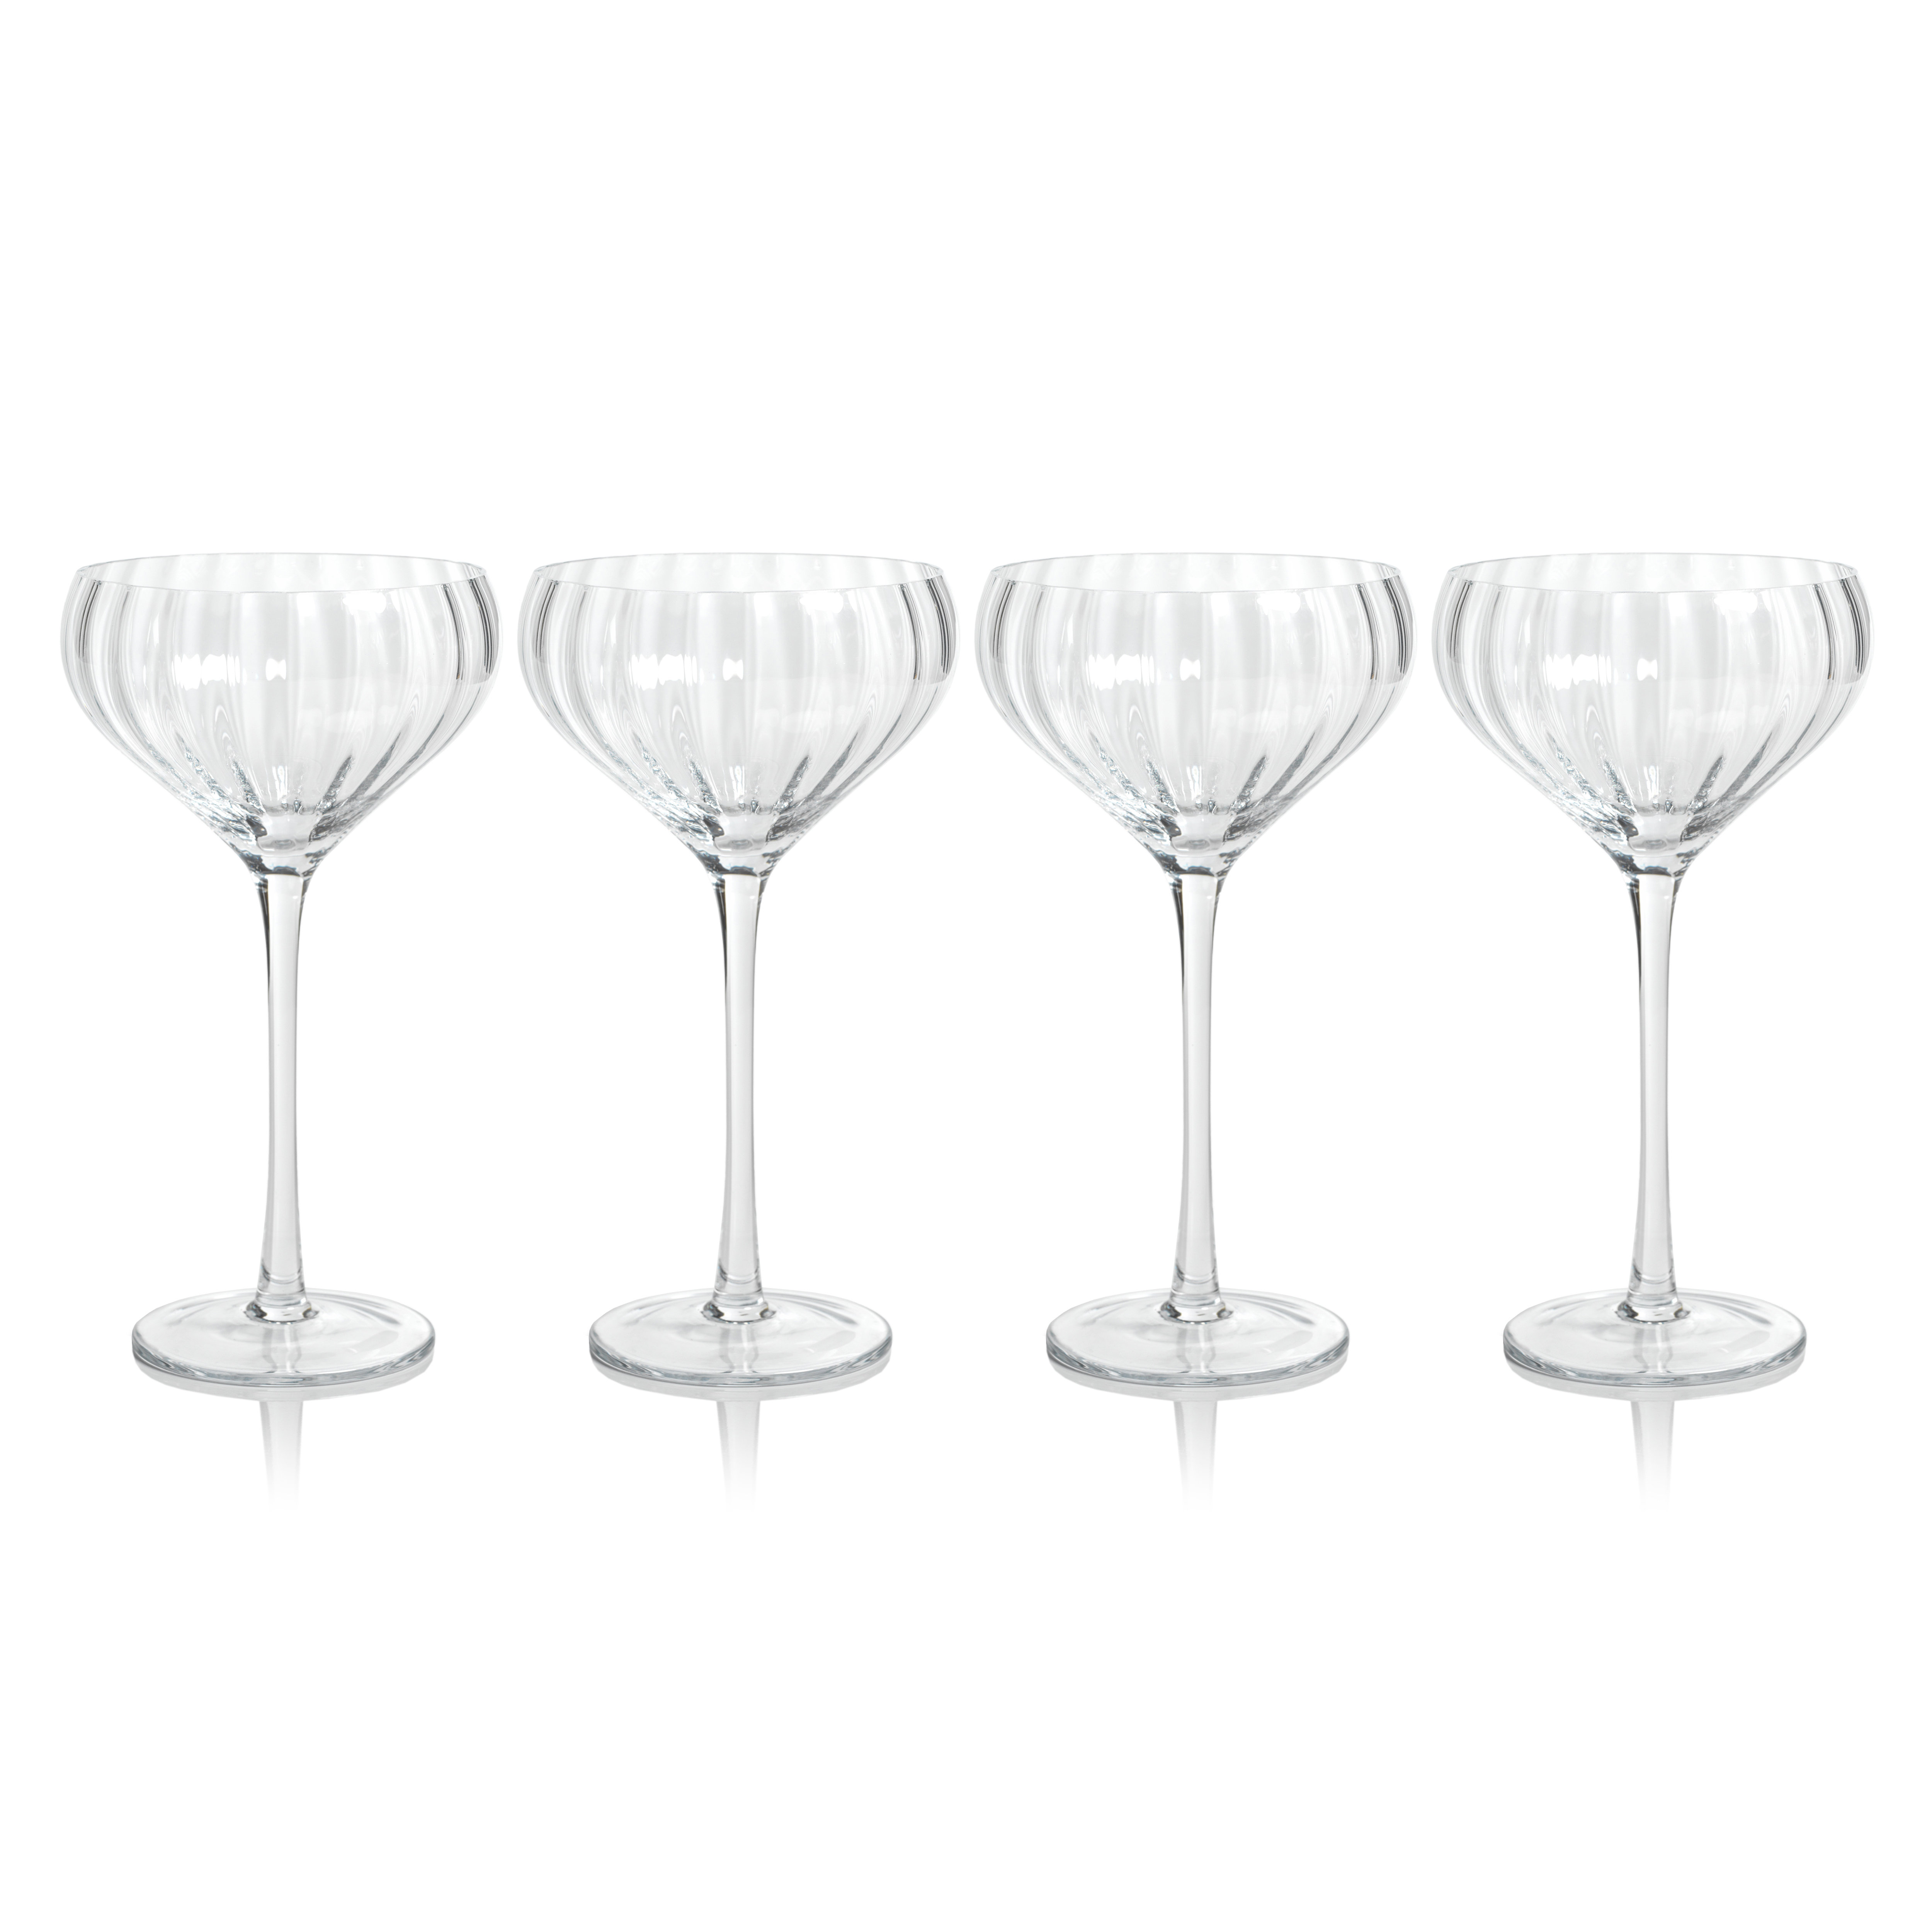 https://assets.wfcdn.com/im/67382384/compr-r85/2445/244542276/malden-optic-cocktail-glasses-set-of-4.jpg